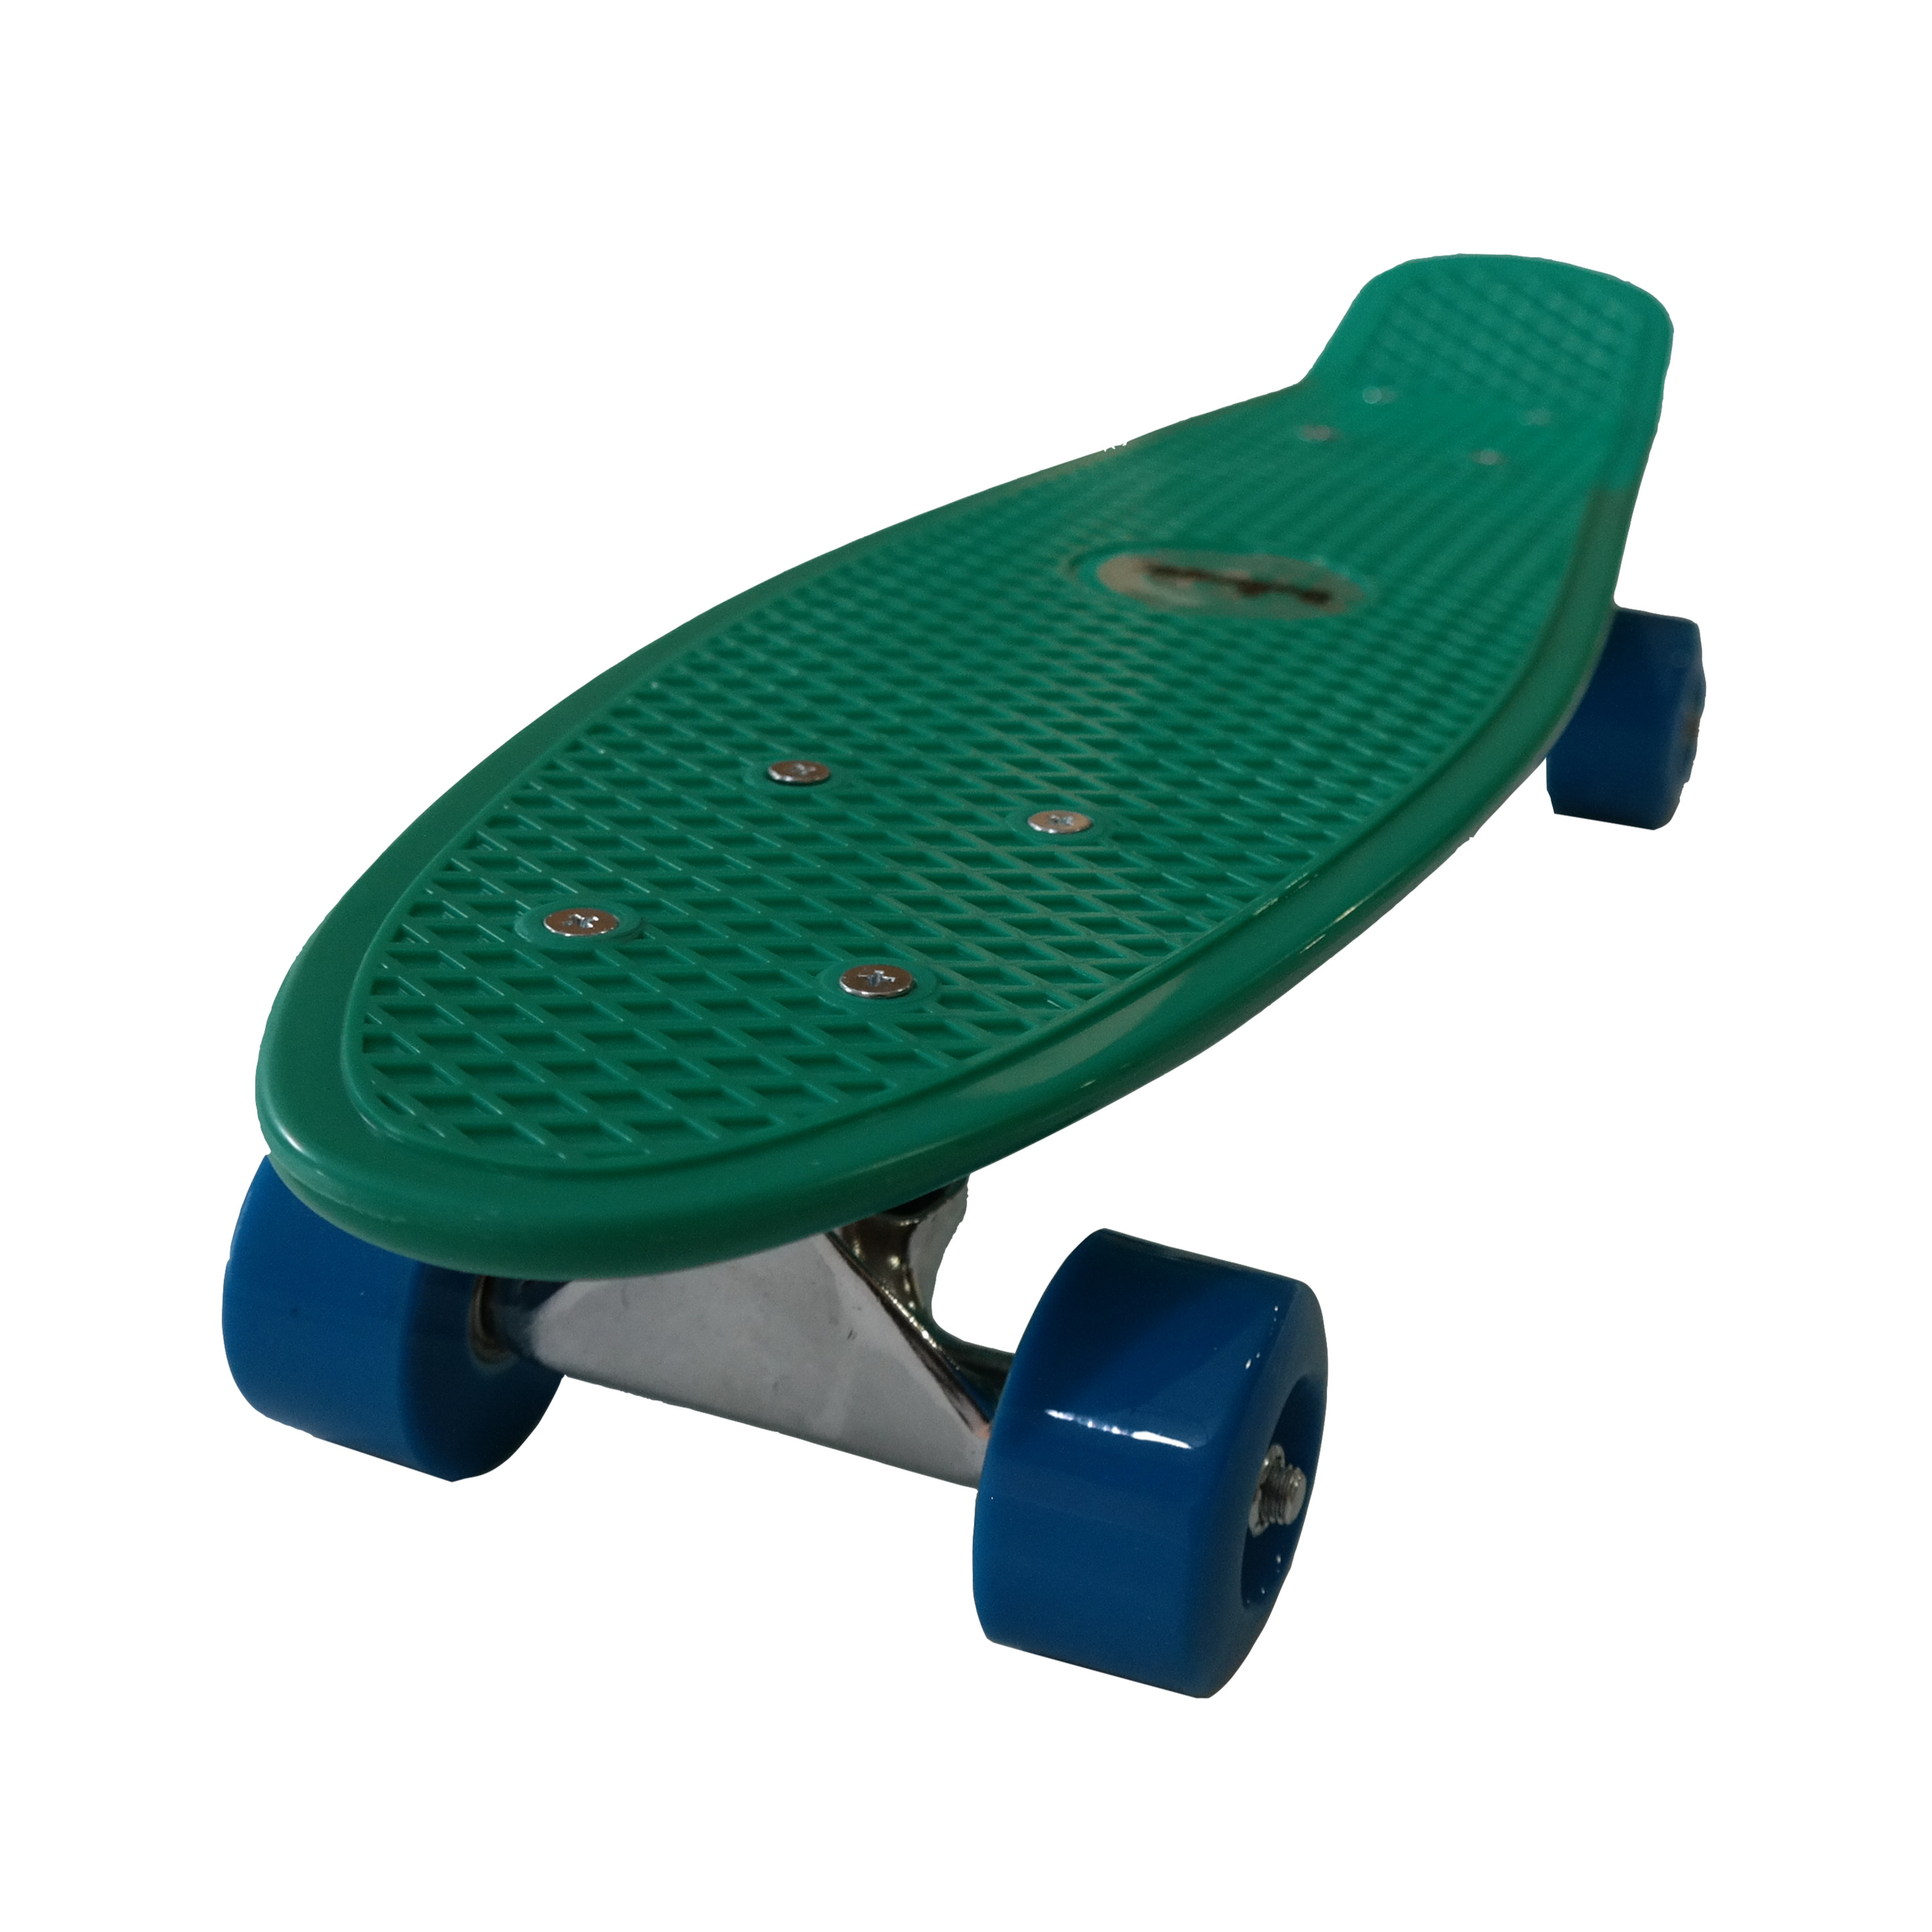 Tabla Skate Bollinger Penny Board Verde